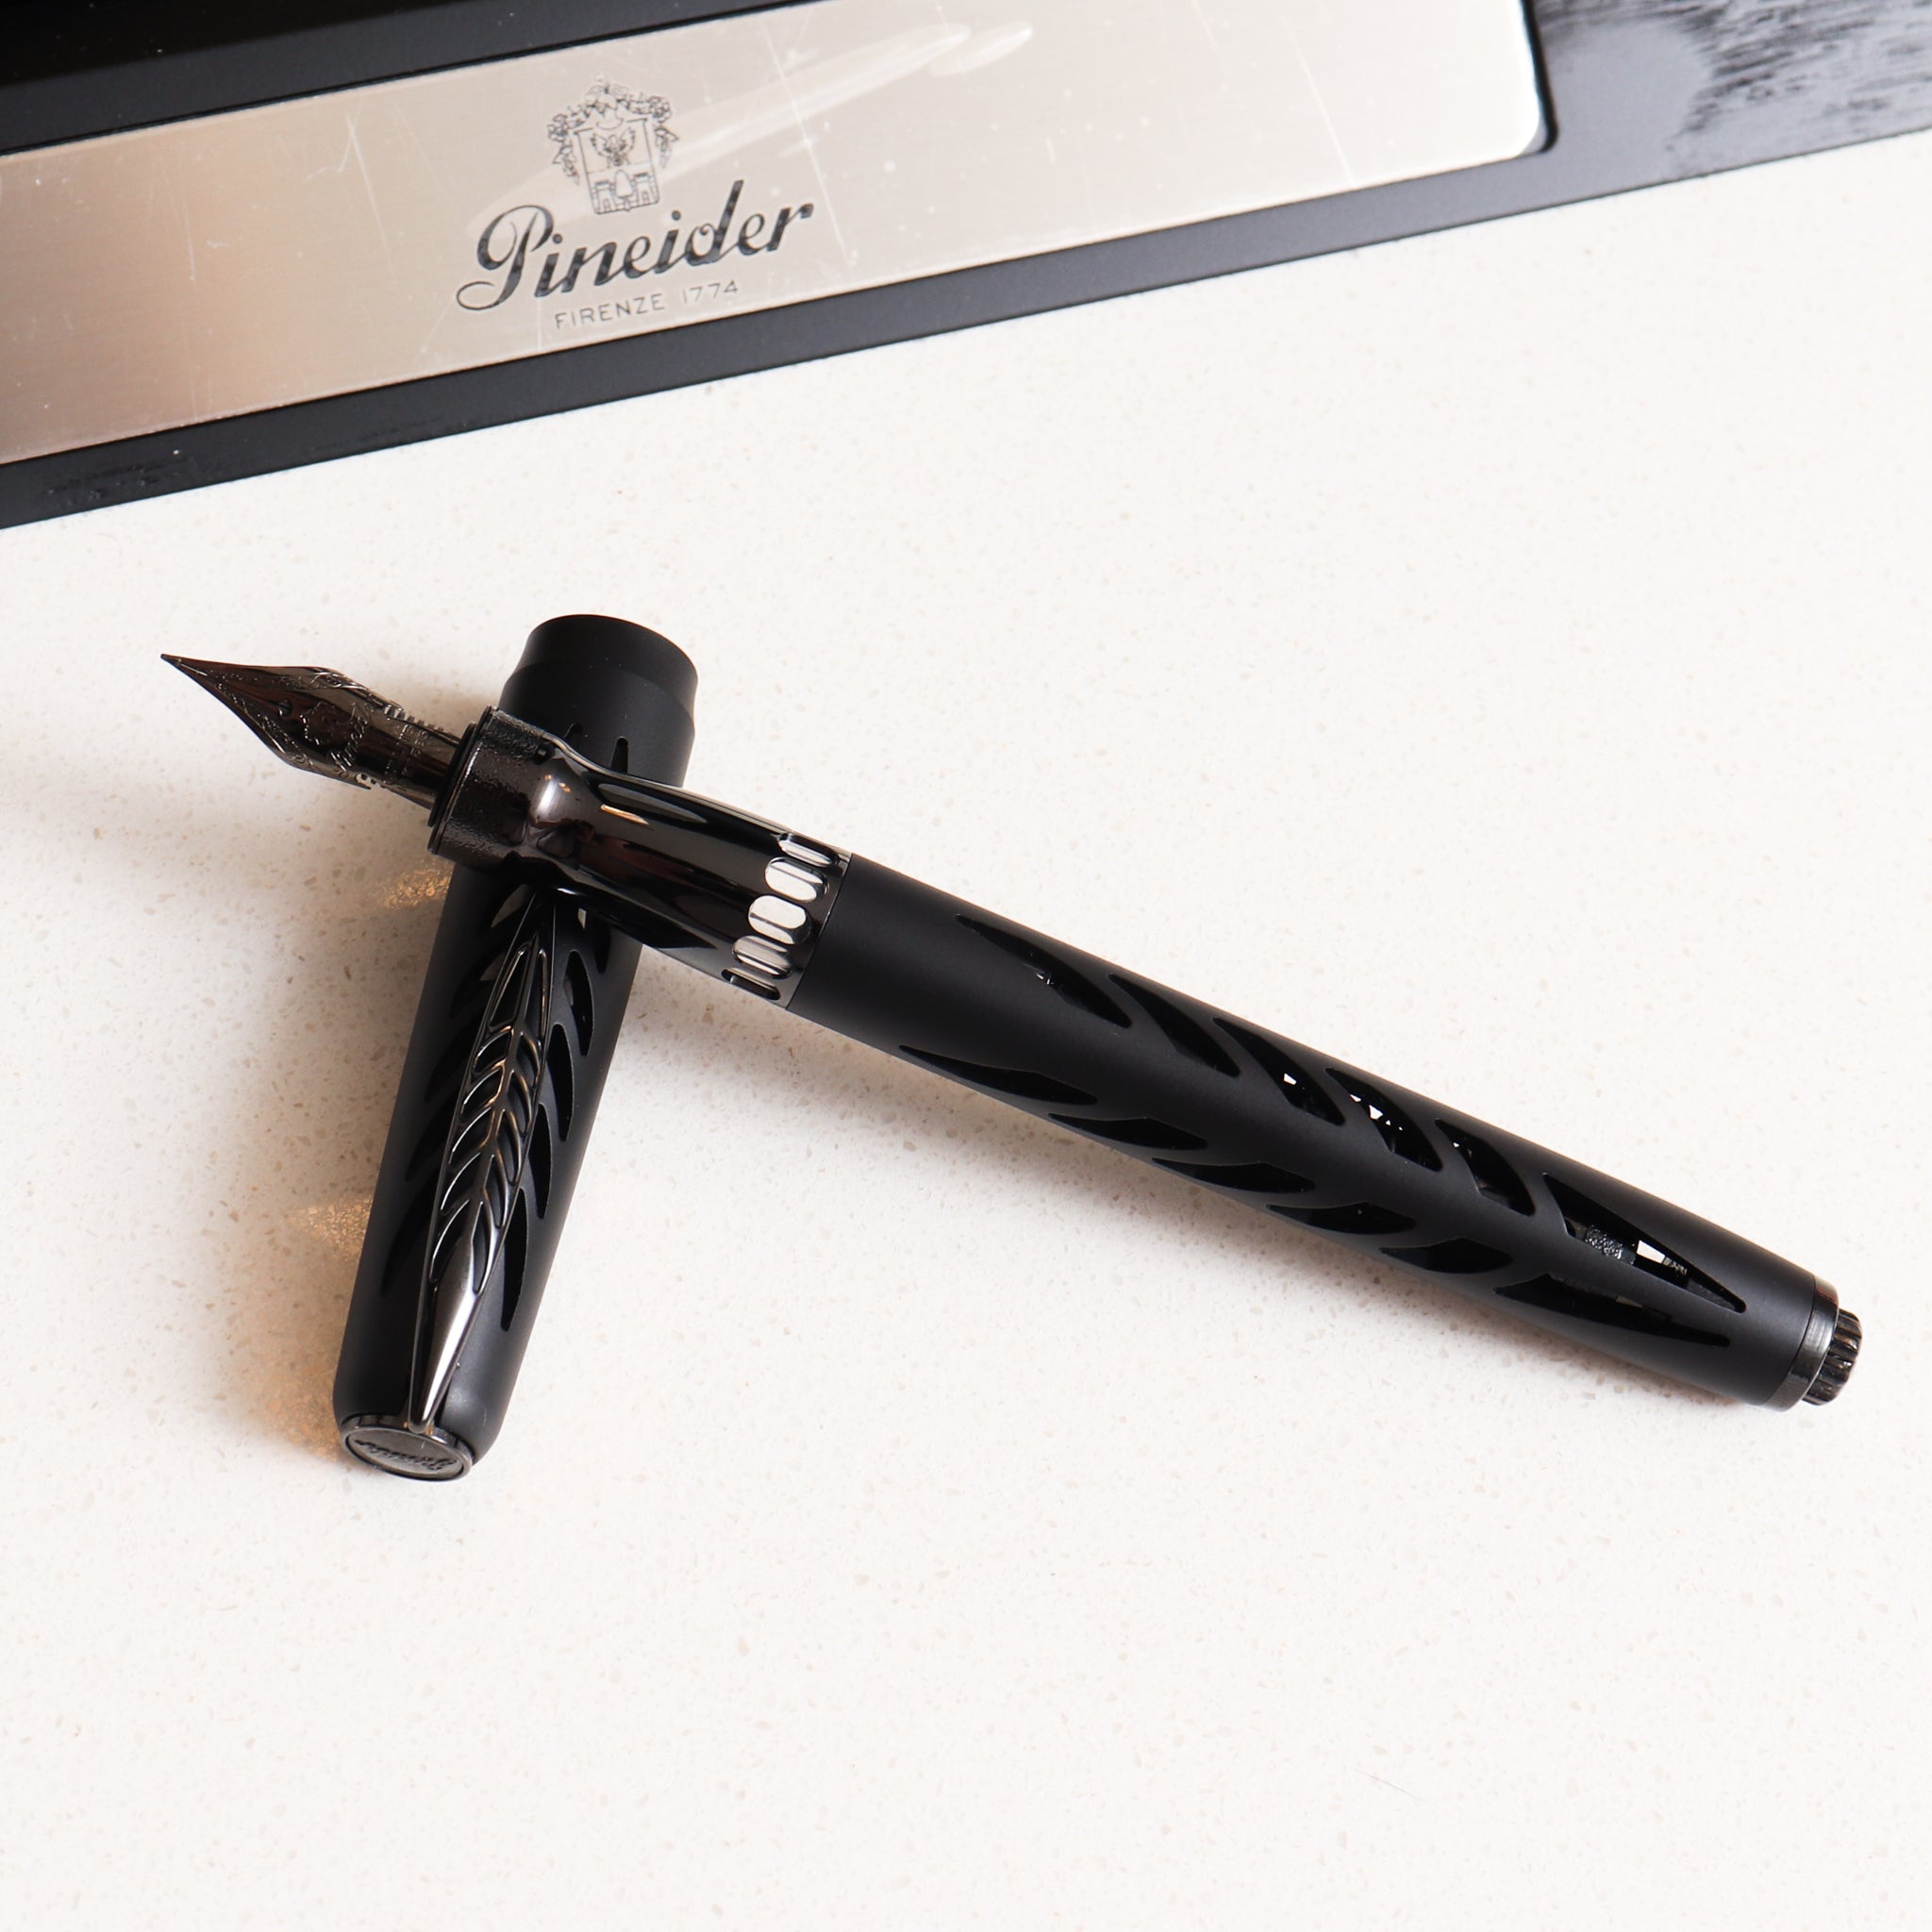 Black INKredible Pen, The Fountain pen for art making!